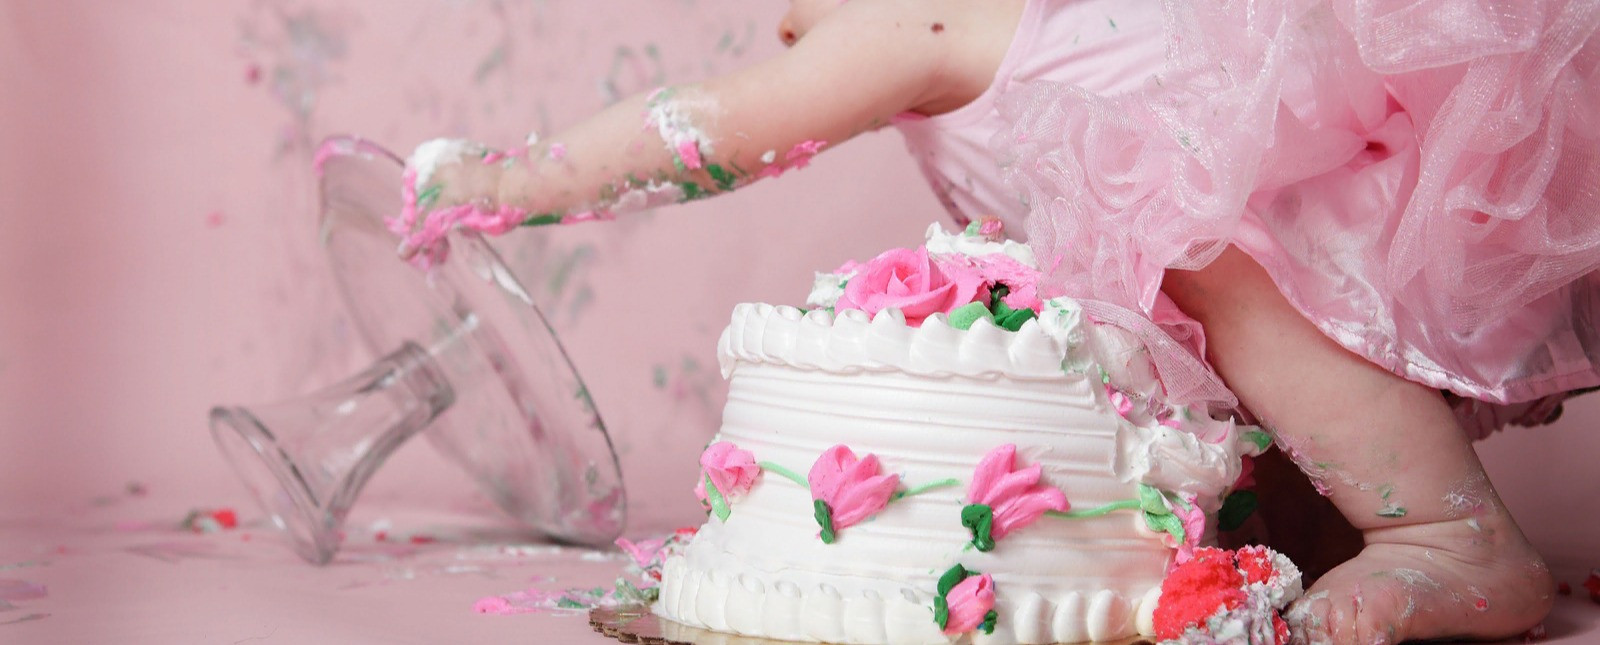 Алёна  Кадникова : День рождение дочери без сюрприза и торта